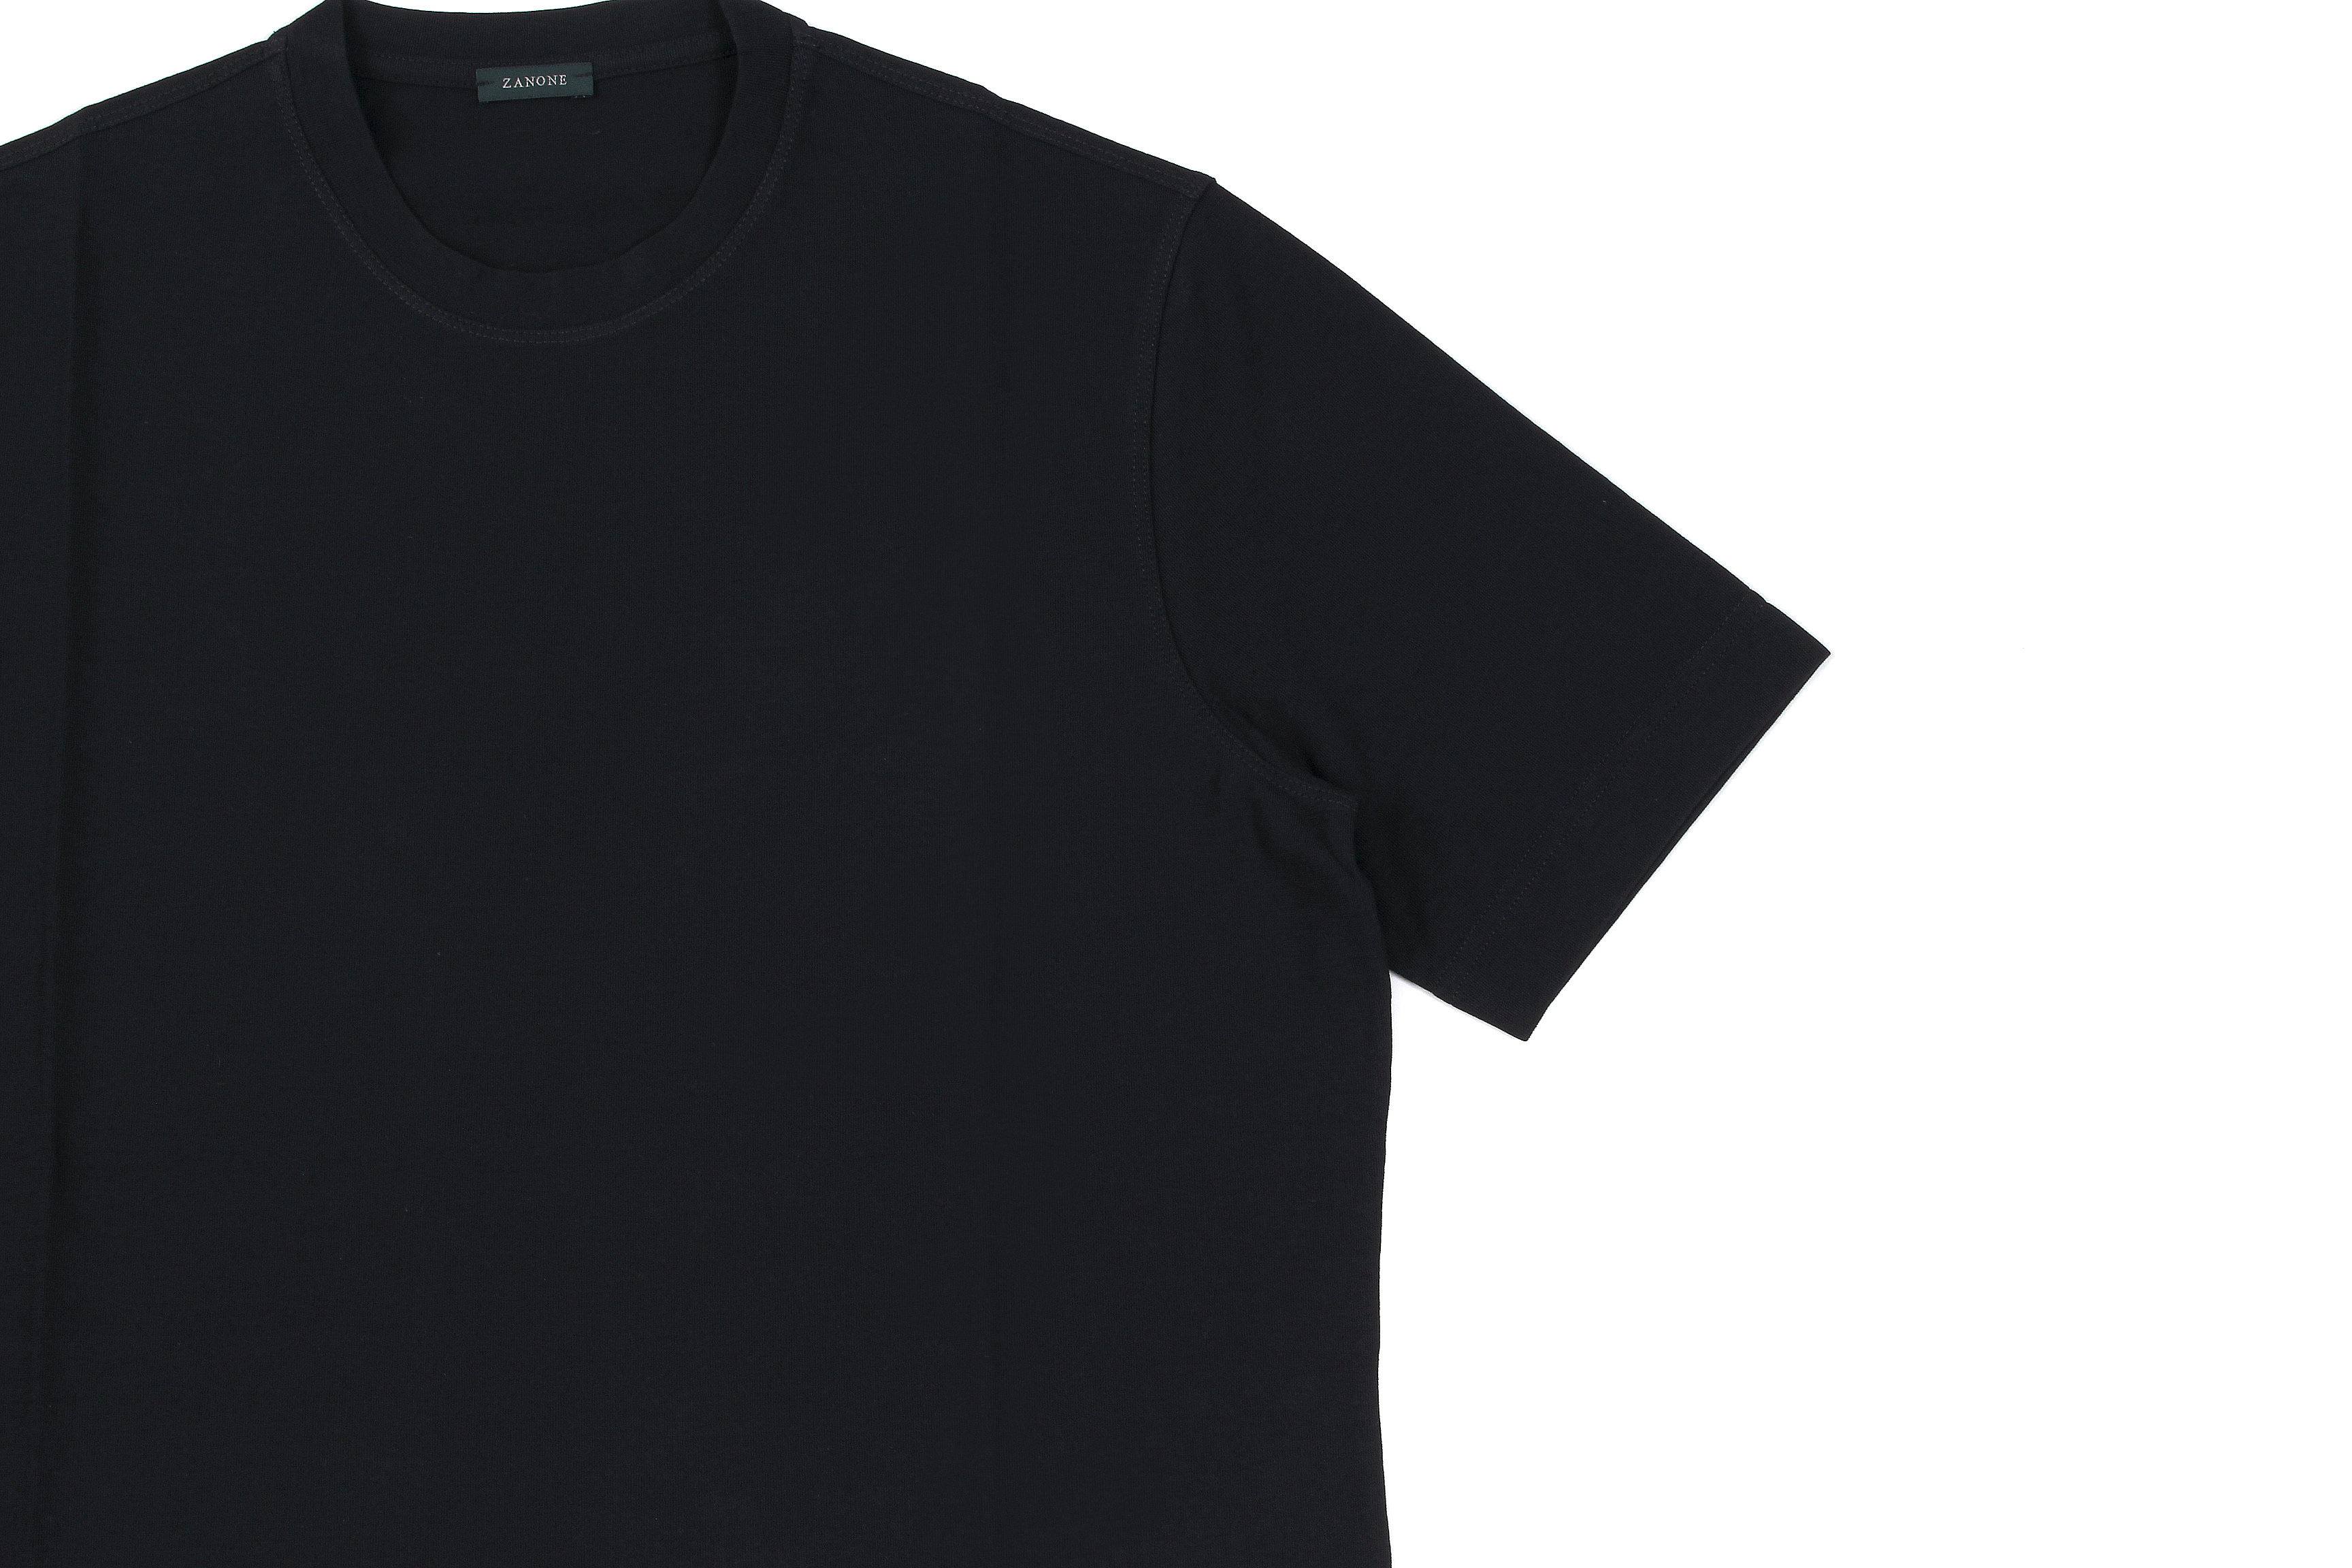 ZANONE(ザノーネ) Crew Neck T-shirt (クルーネックTシャツ) ice cotton アイスコットン Tシャツ BLACK (ブラック・Z0015) MADE IN ITALY(イタリア製) 2020 春夏 【ご予約開始】愛知 名古屋 altoediritto アルトエデリット tee 夏Tシャツ